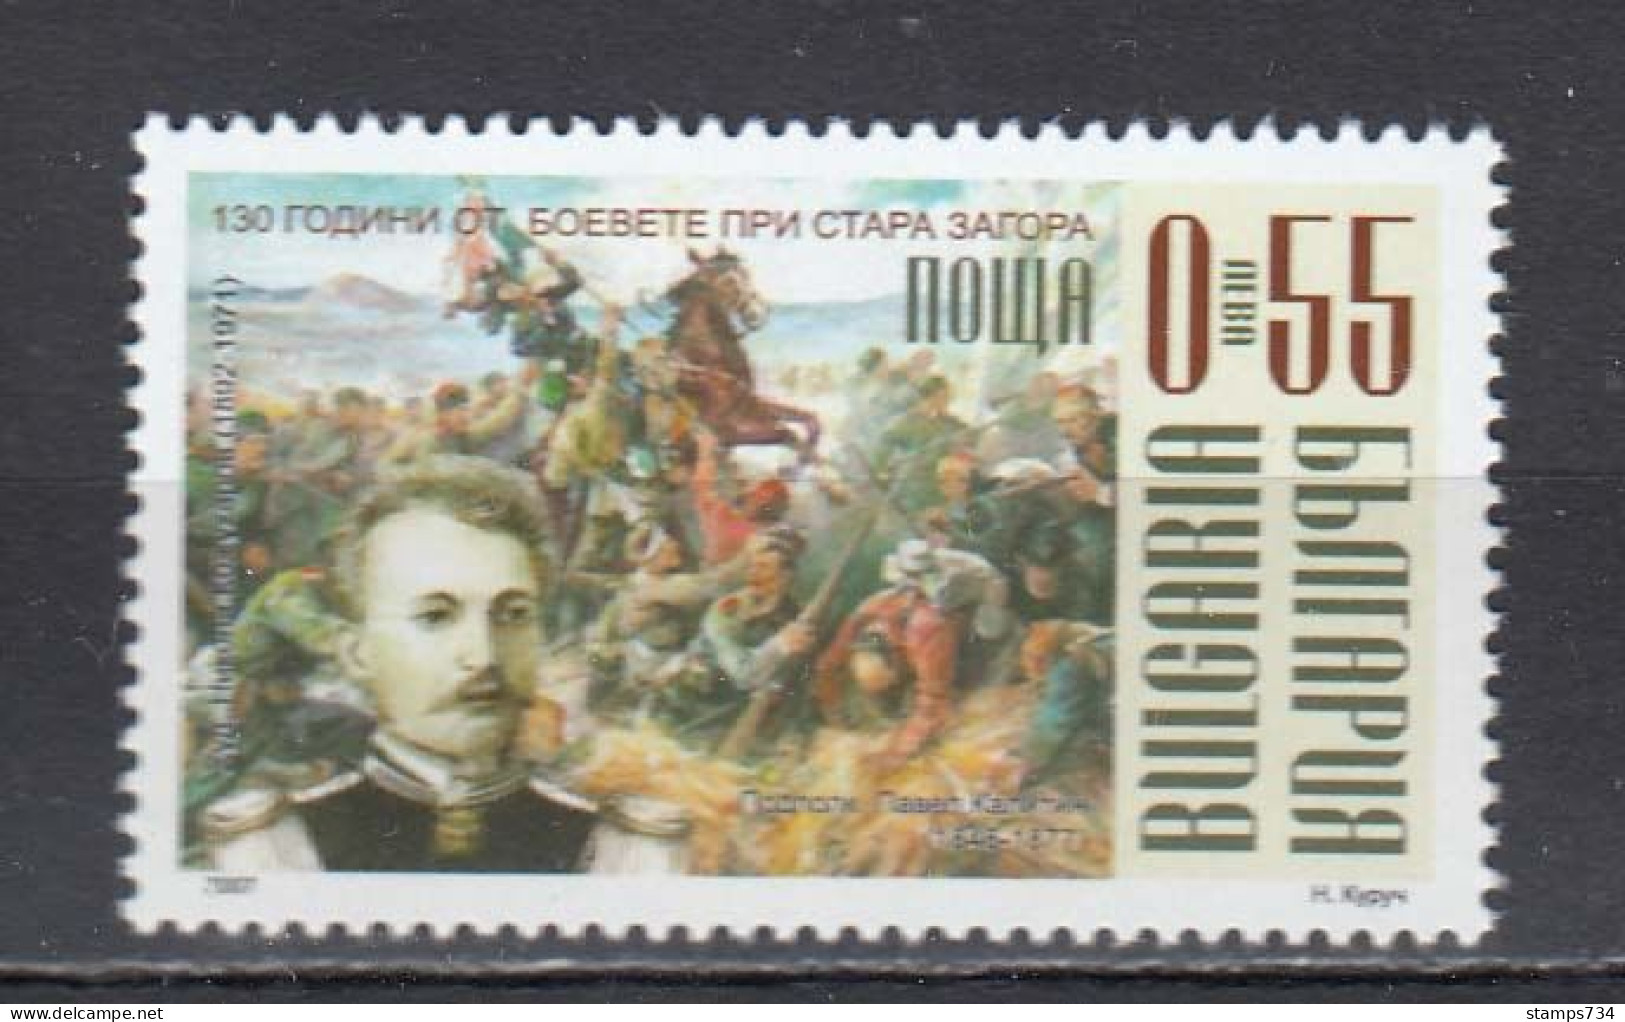 Bulgaria 2007 - 130th Anniversary Of The Battle Of Stara Zagora, Mi-Nr. 4818, MNH** - Ongebruikt